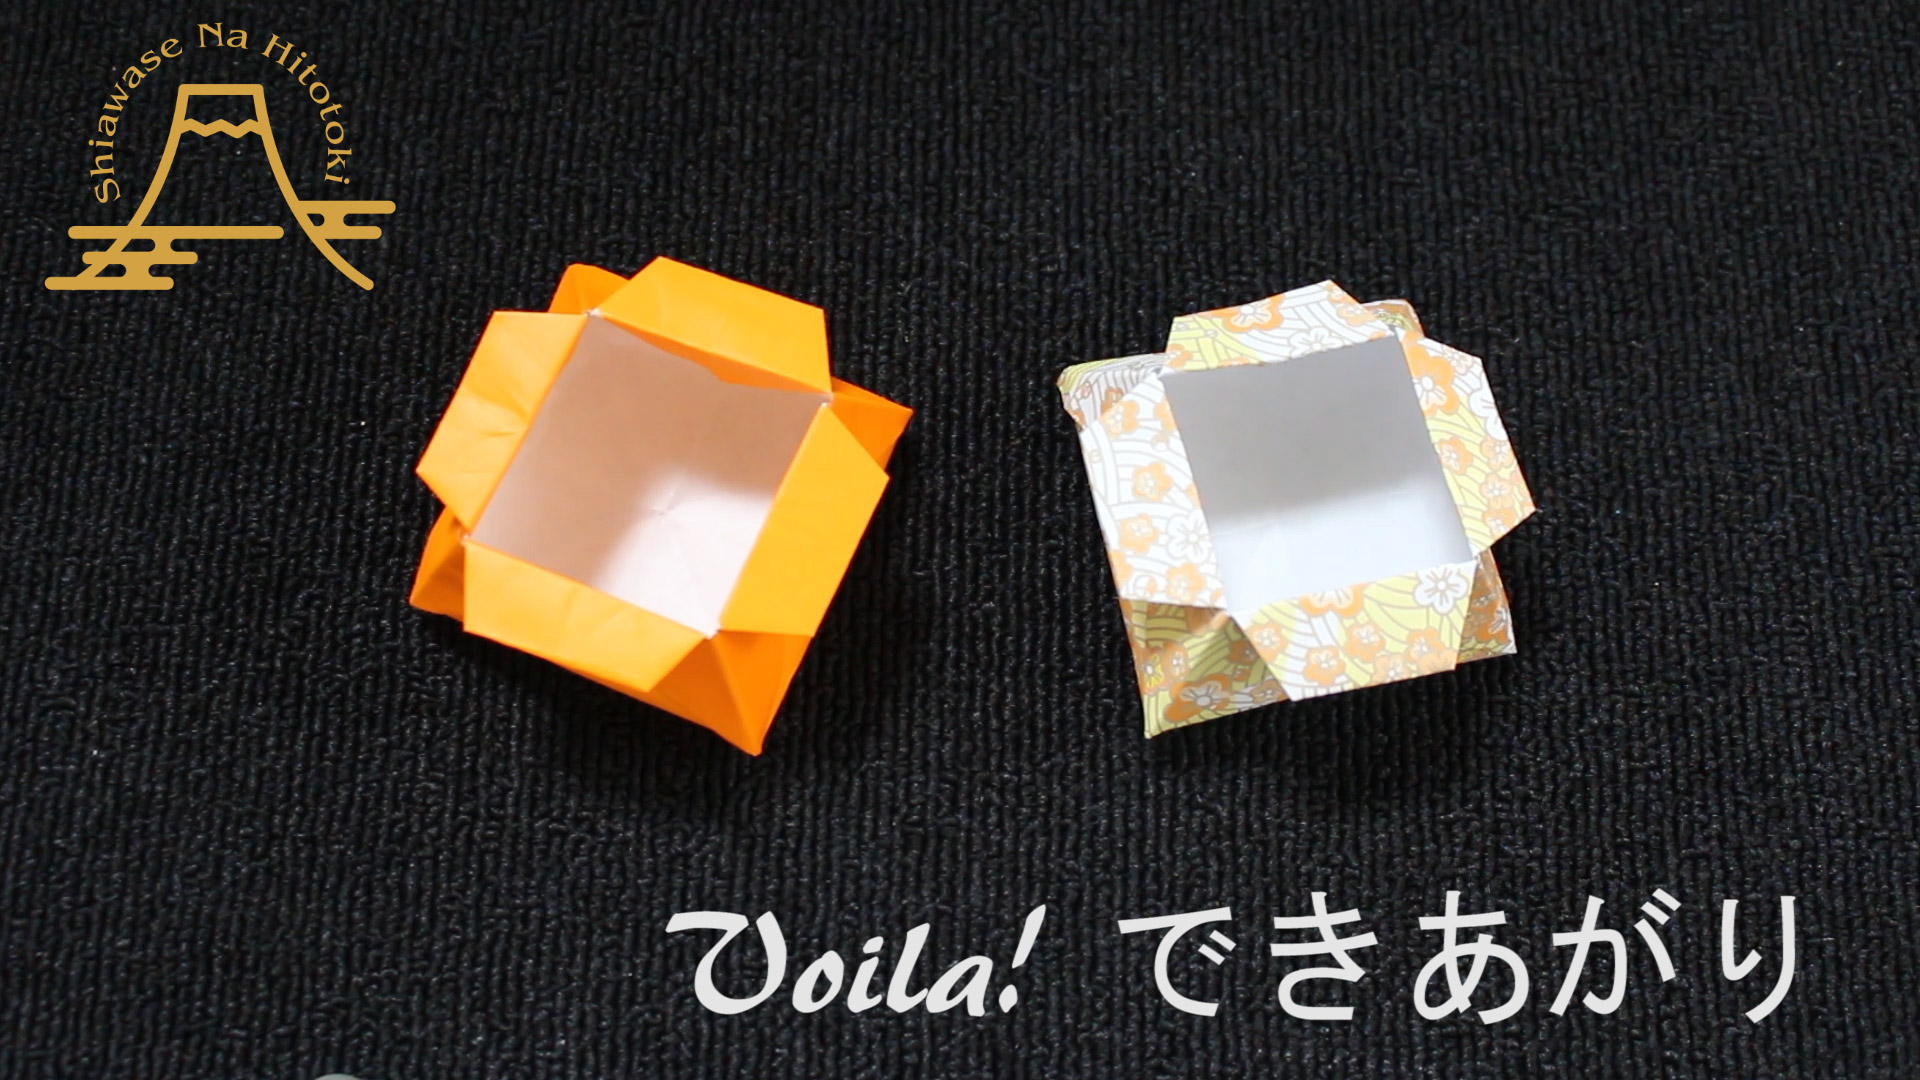 簡単 折り紙 お子さんに大人気 タコさんウインナーの折り方 折り紙の折り方 幸せなひと時